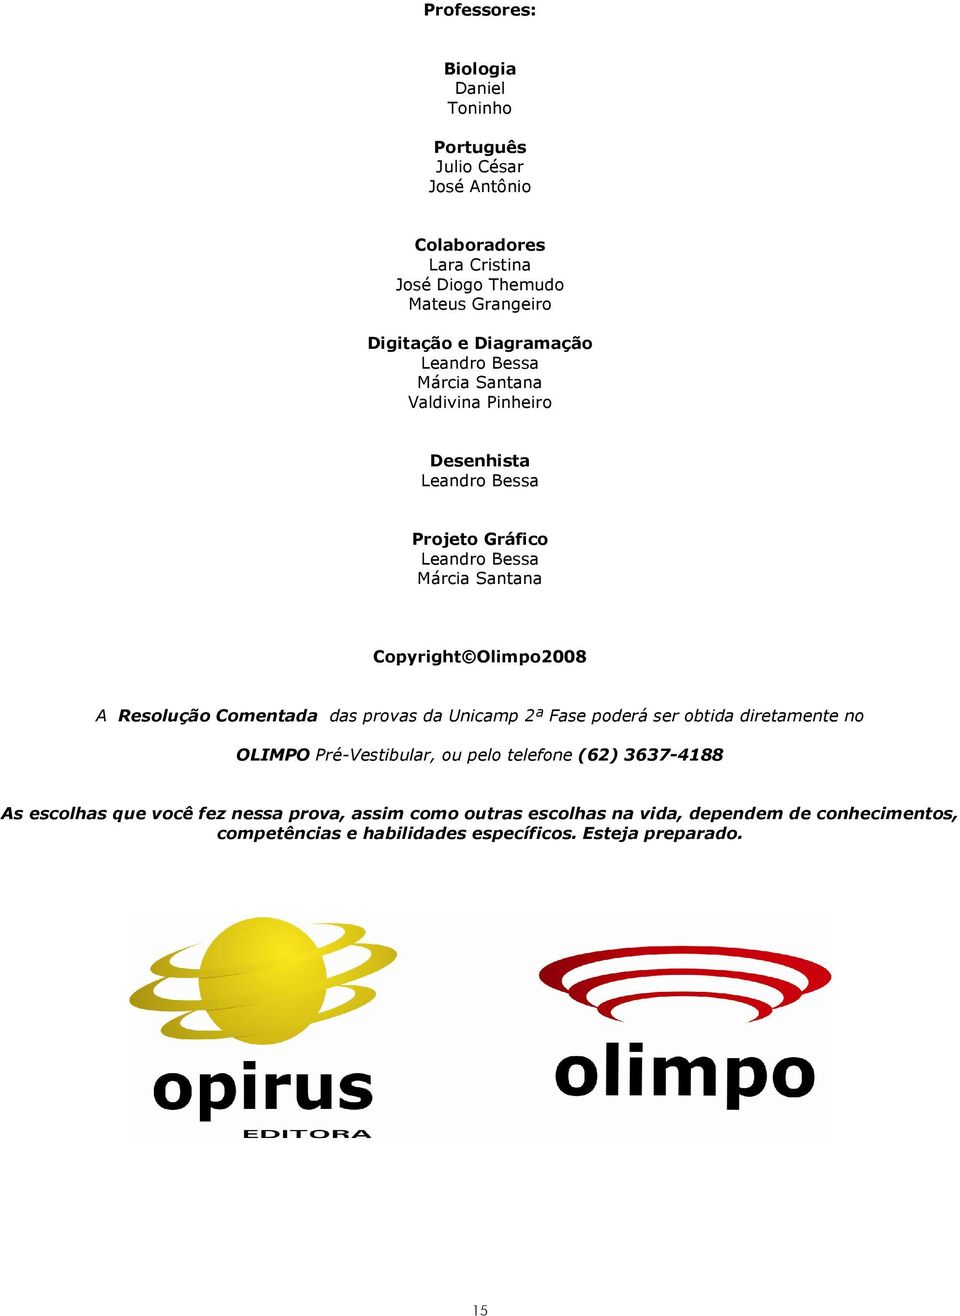 Olimpo2008 A Resolução Comentada das provas da Unicamp 2ª Fase poderá ser obtida diretamente no OLIMPO Pré-Vestibular, ou pelo telefone (62)